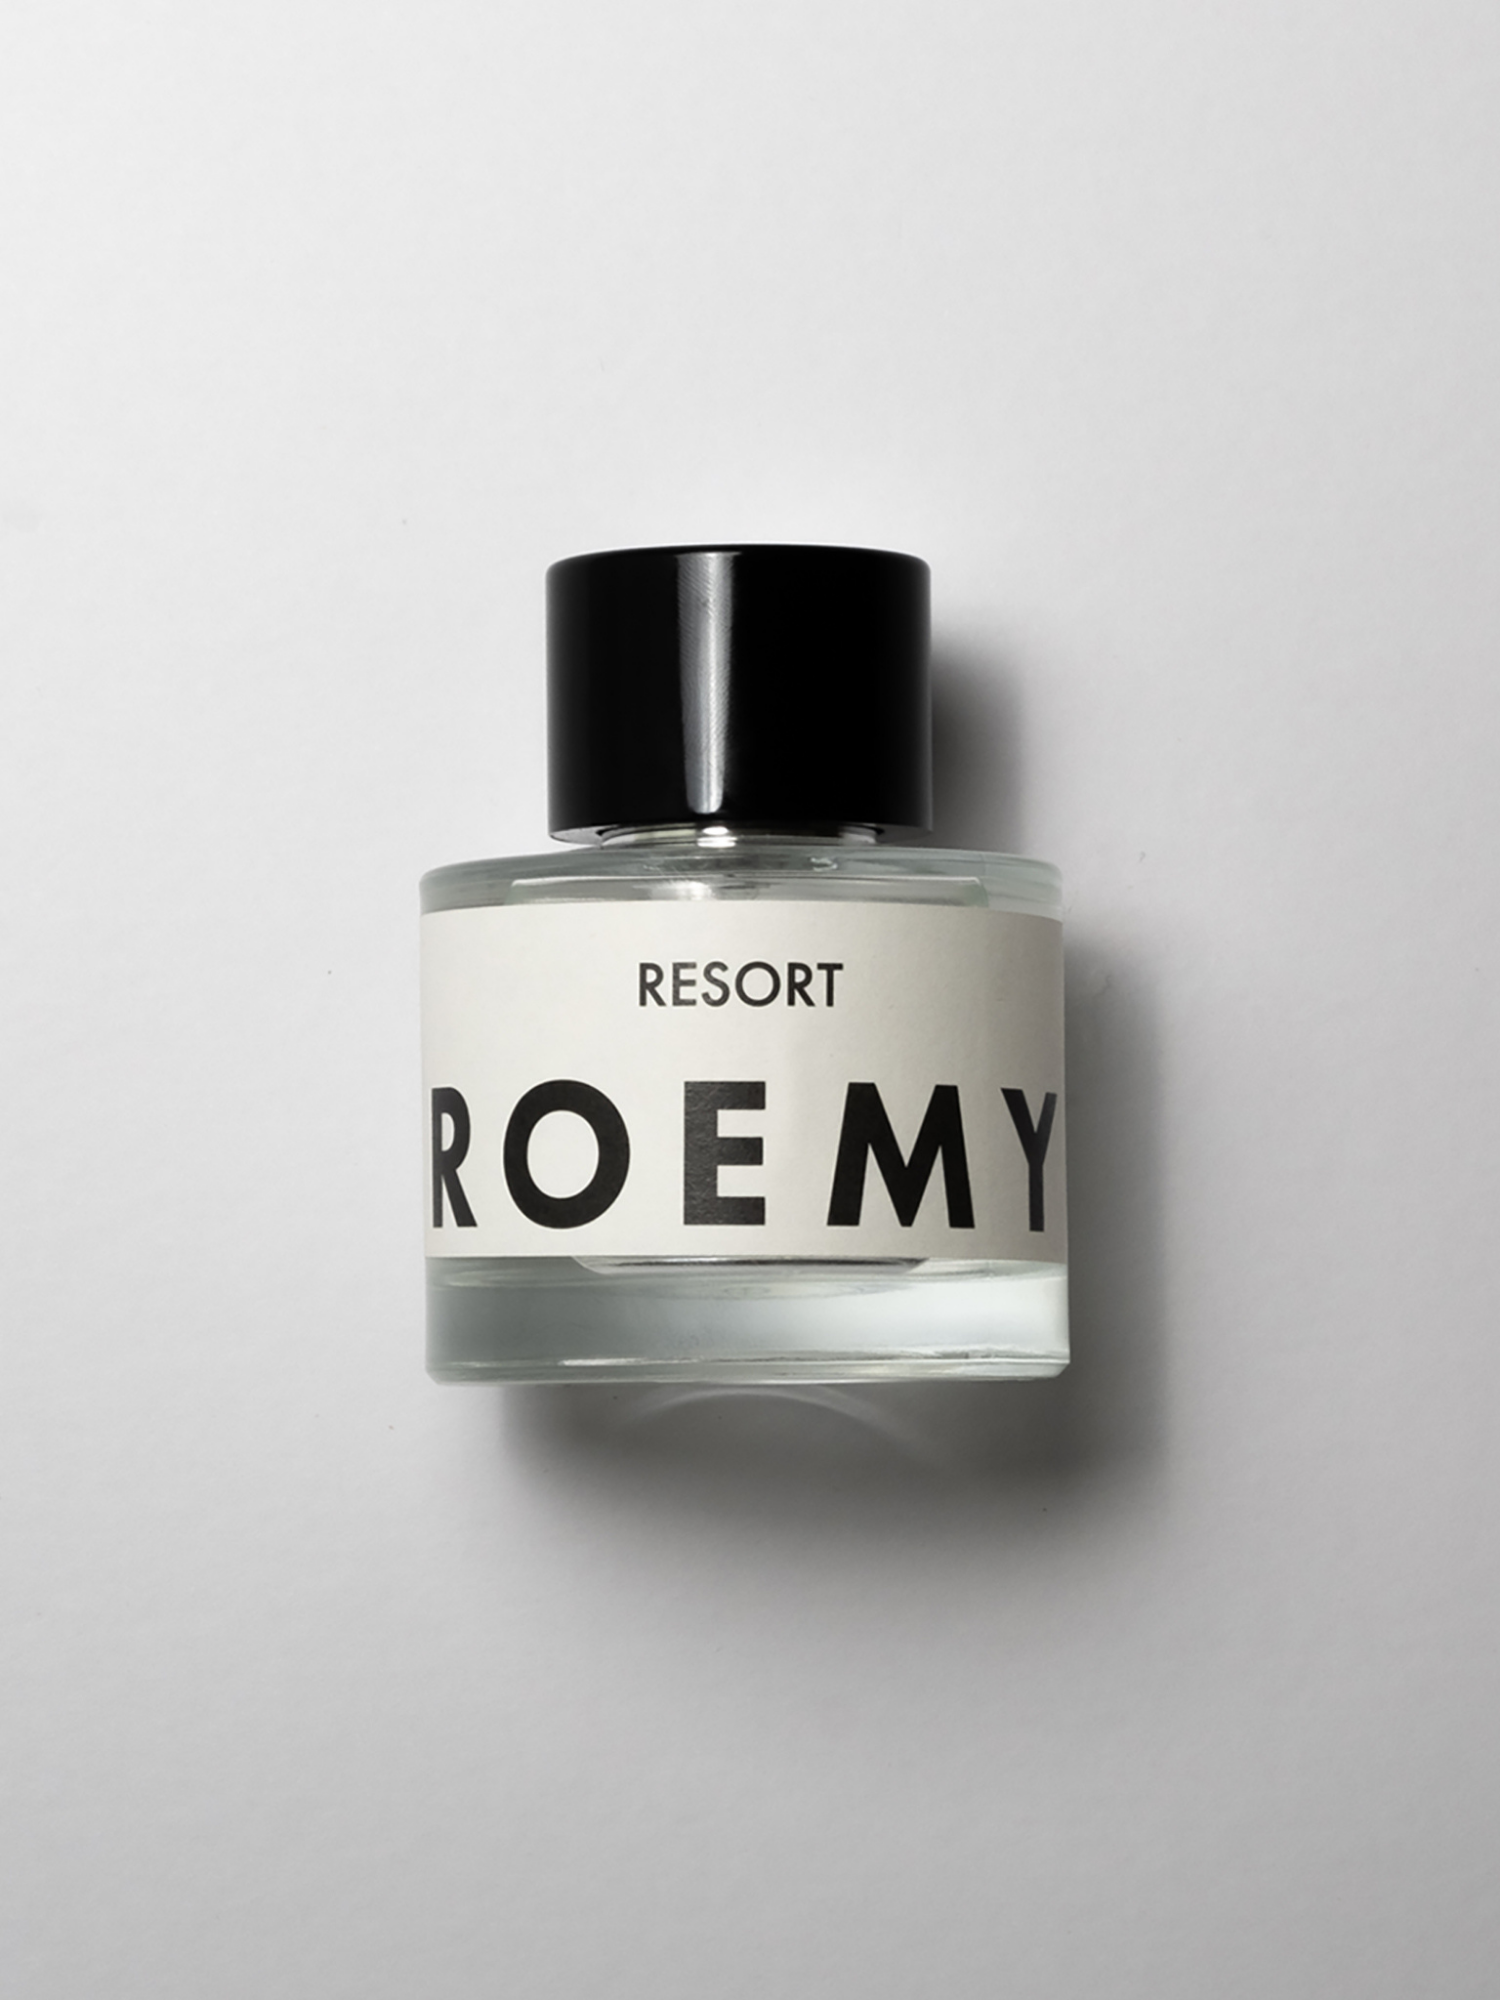 ROEMY - Resort